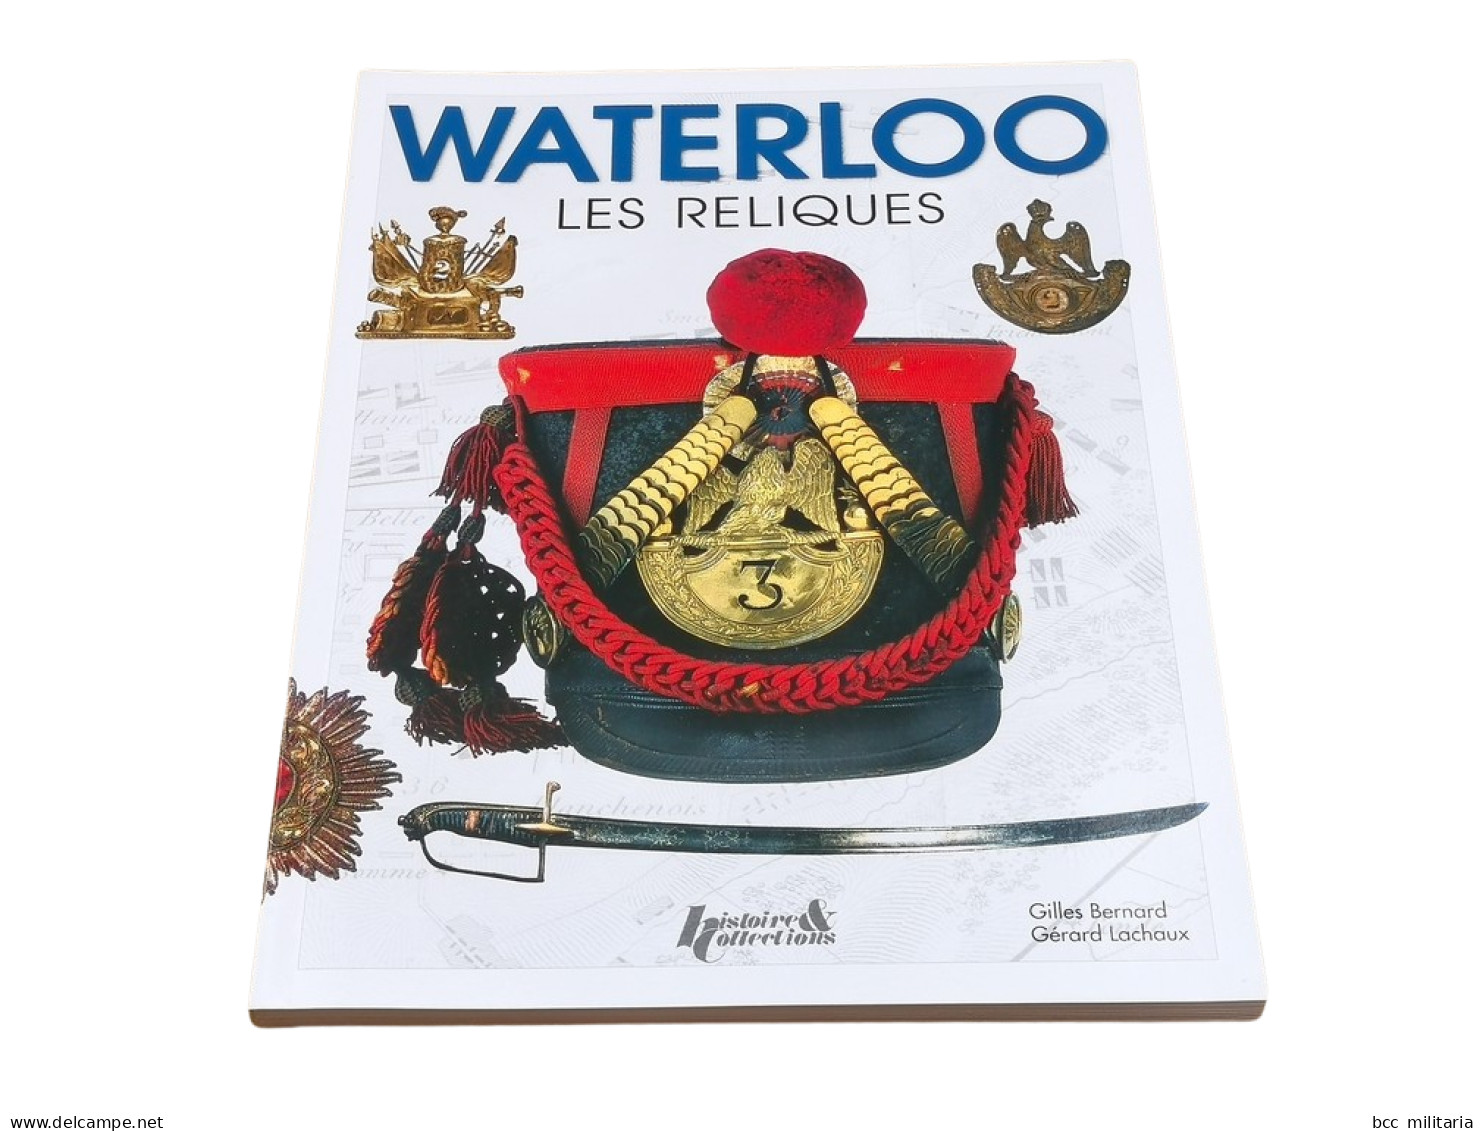 WATERLOO, LES RELIQUES Histoire Et Collections 128 Pages Livre Neuf - Français